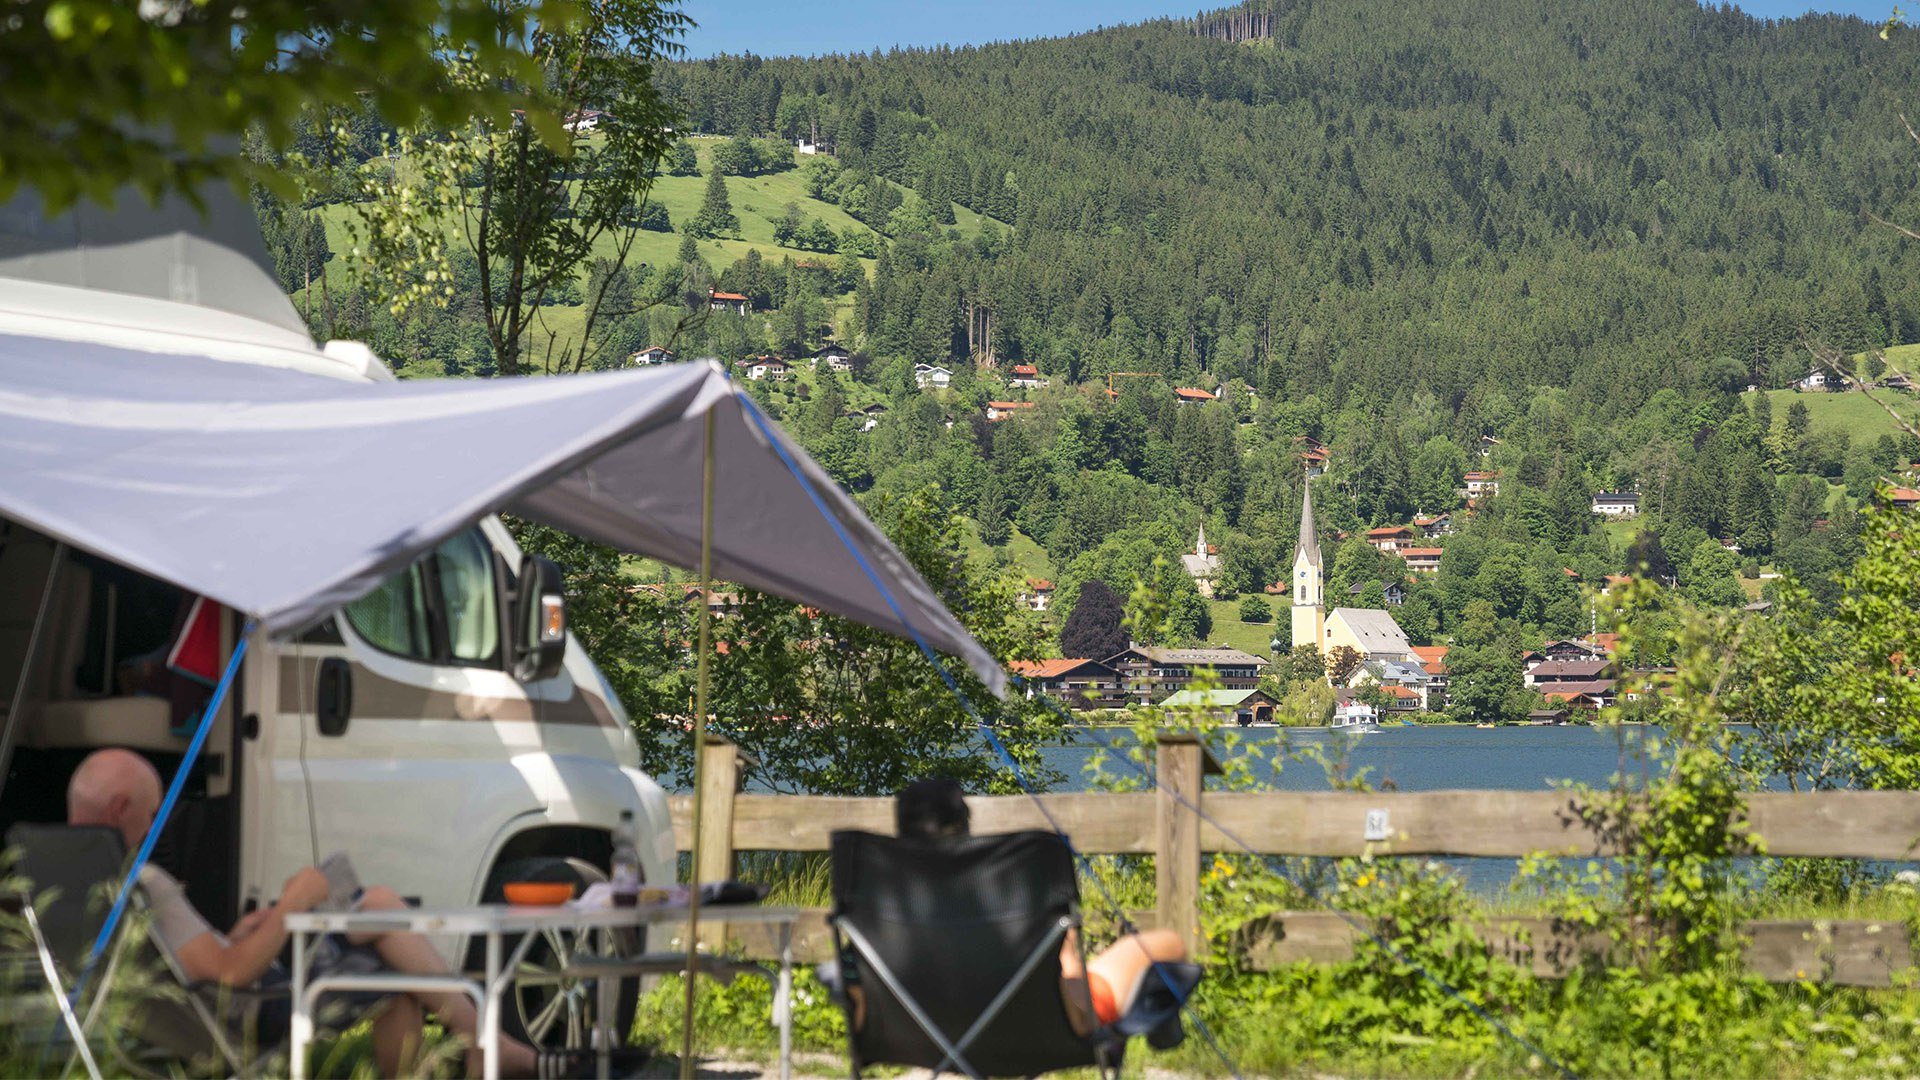 Campingplatz am Schliersee, © Dietmar Denger